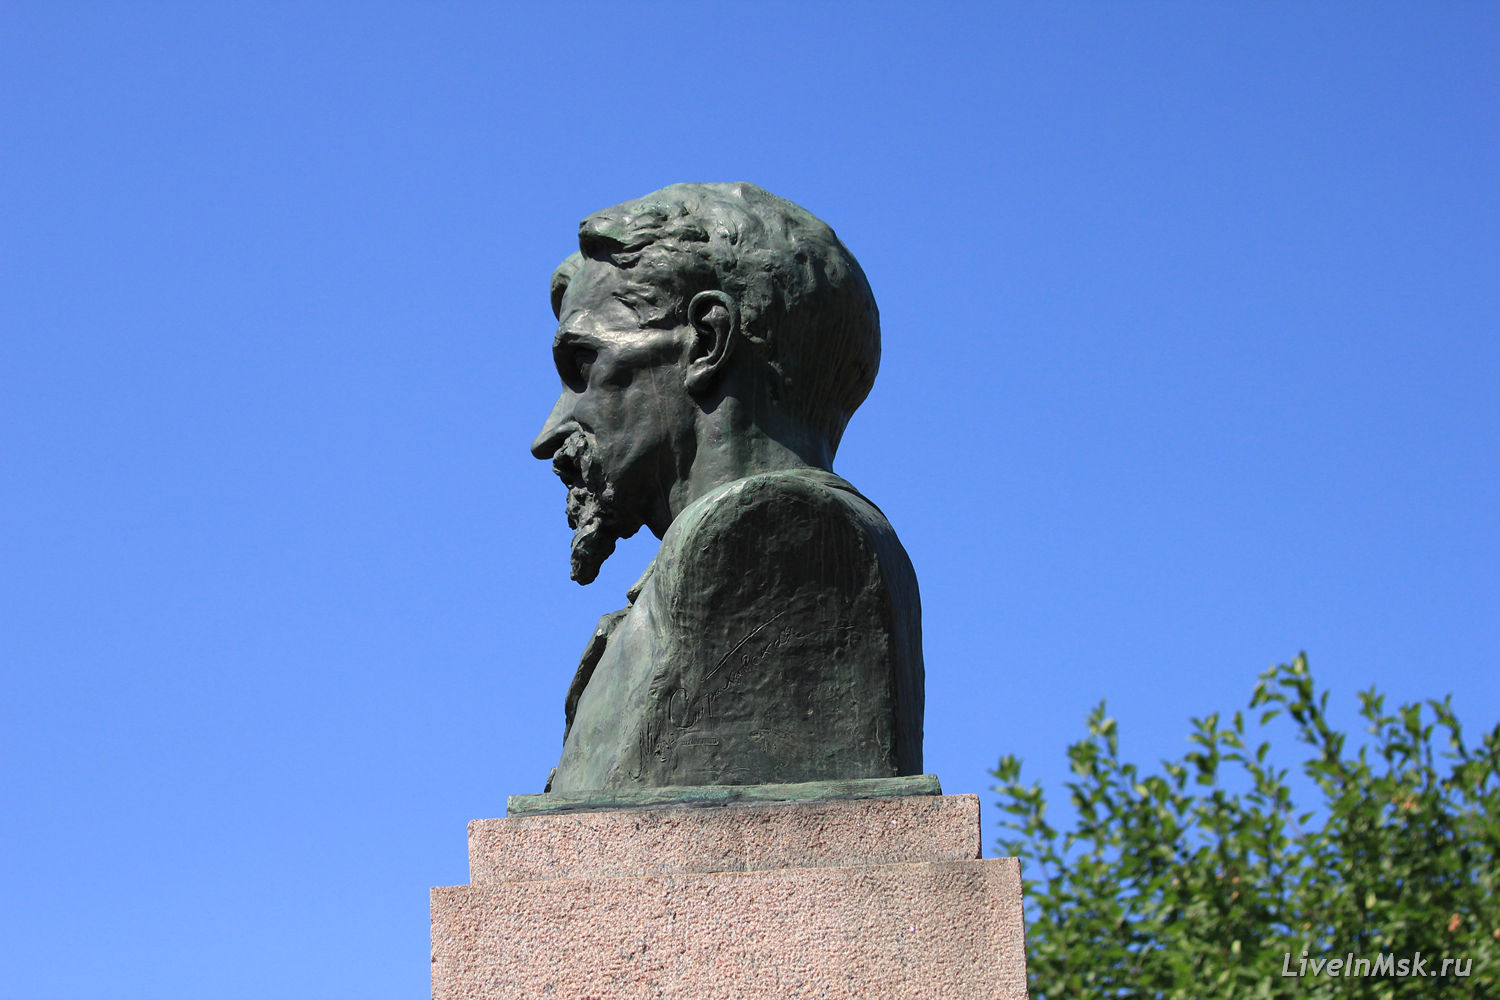 Петровское-Разумовское. Памятник К.А.Тимирязеву, фото 2015 года